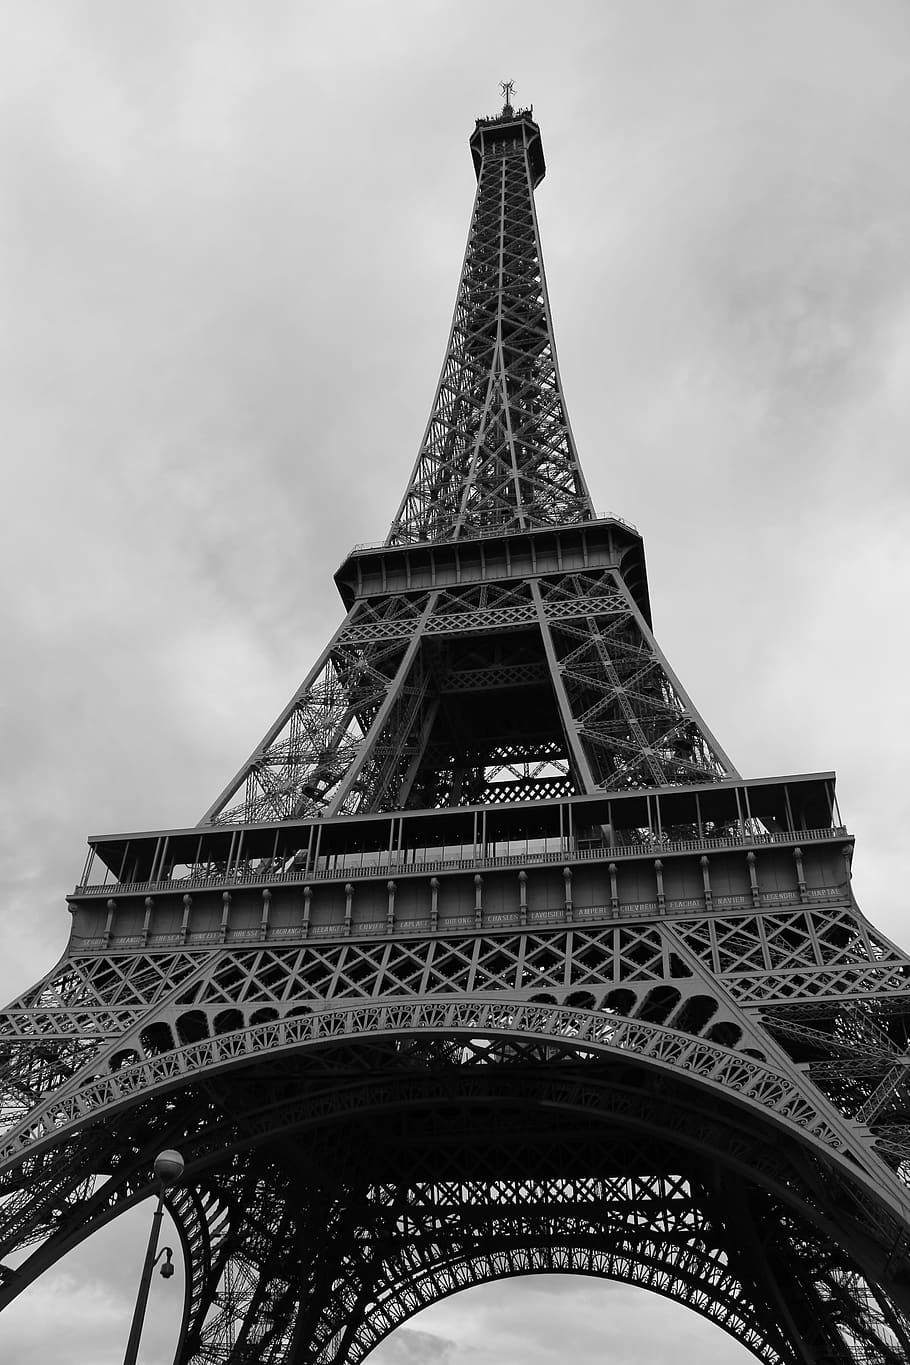 에펠 탑 바탕 화면,탑,검정색과 흰색,흑백 사진,건축물,첨탑